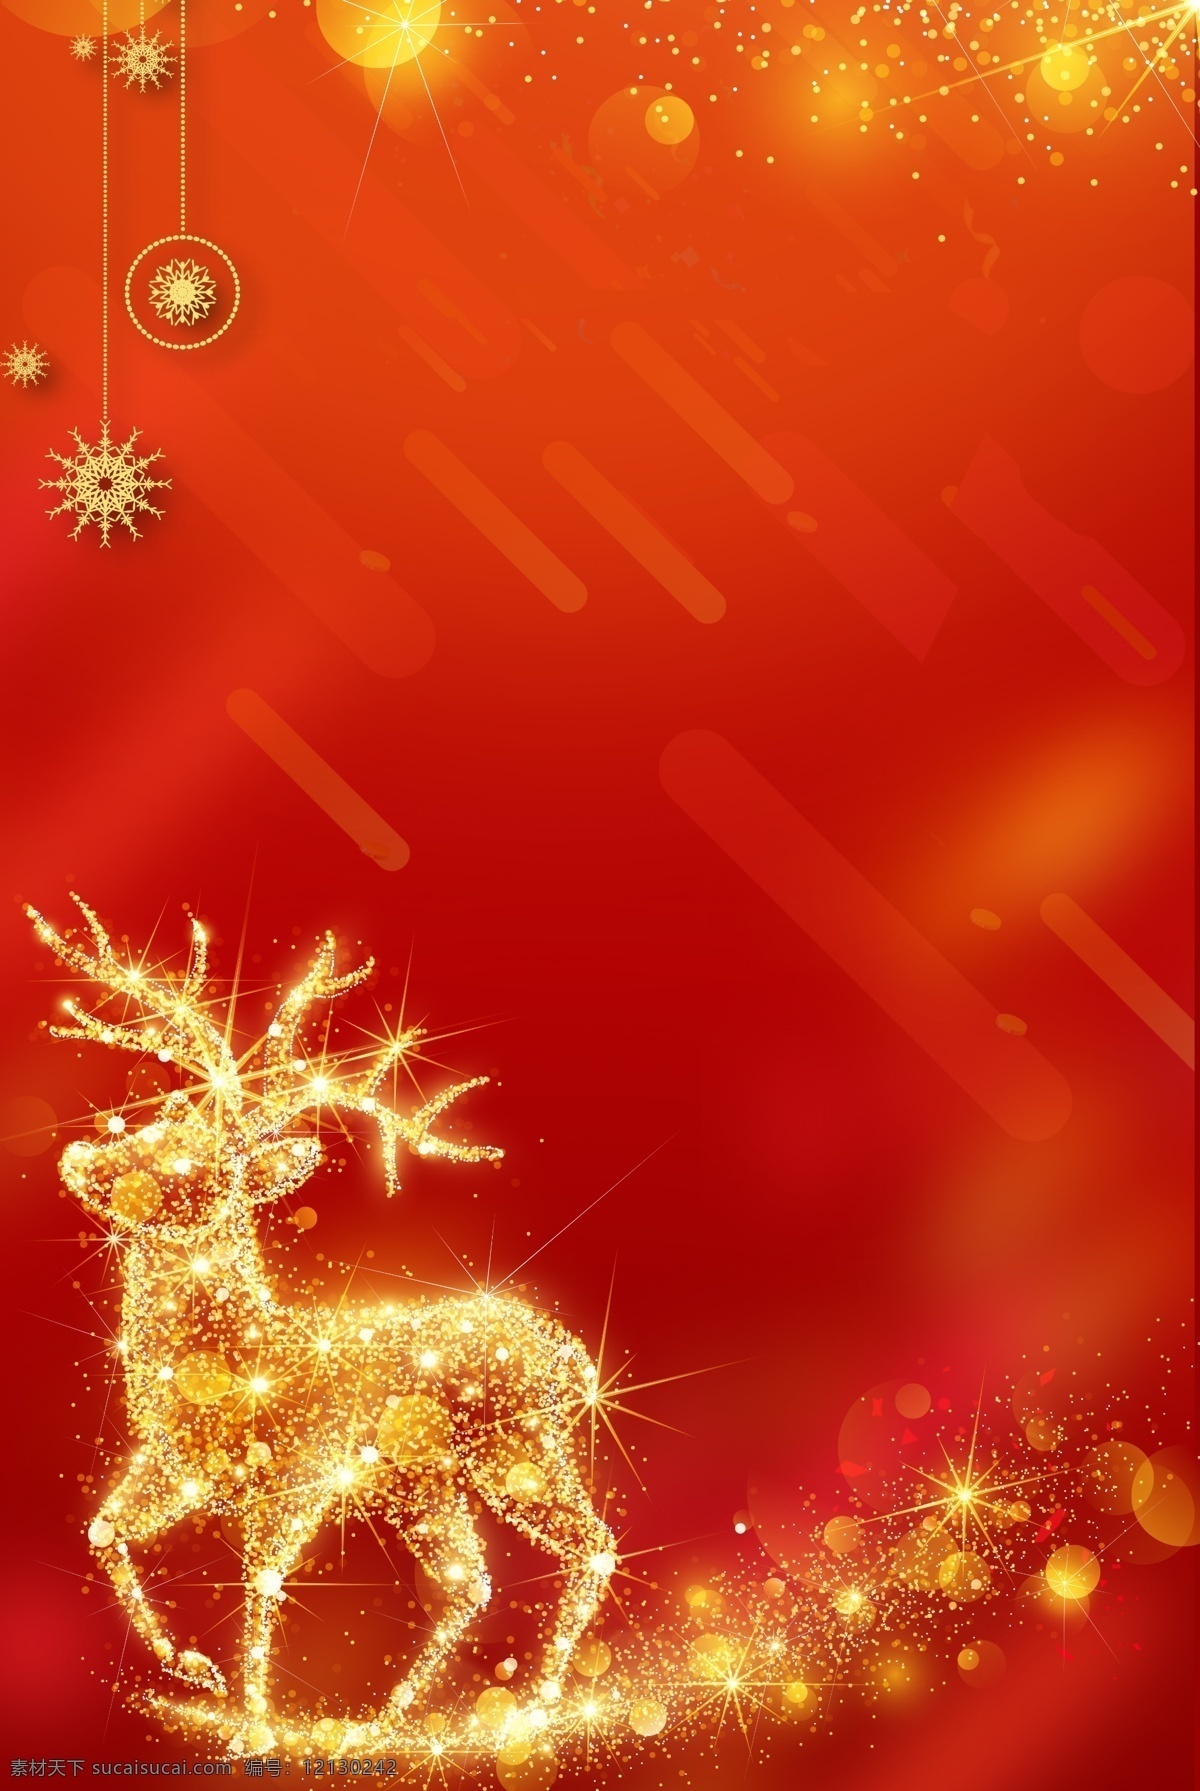 大气 圣诞 麋鹿 背景 雪花 圣诞背景 圣诞素材 圣诞海报 发光 吊球 圣诞节来了 彩球 圣诞背景模板 创意圣诞背景